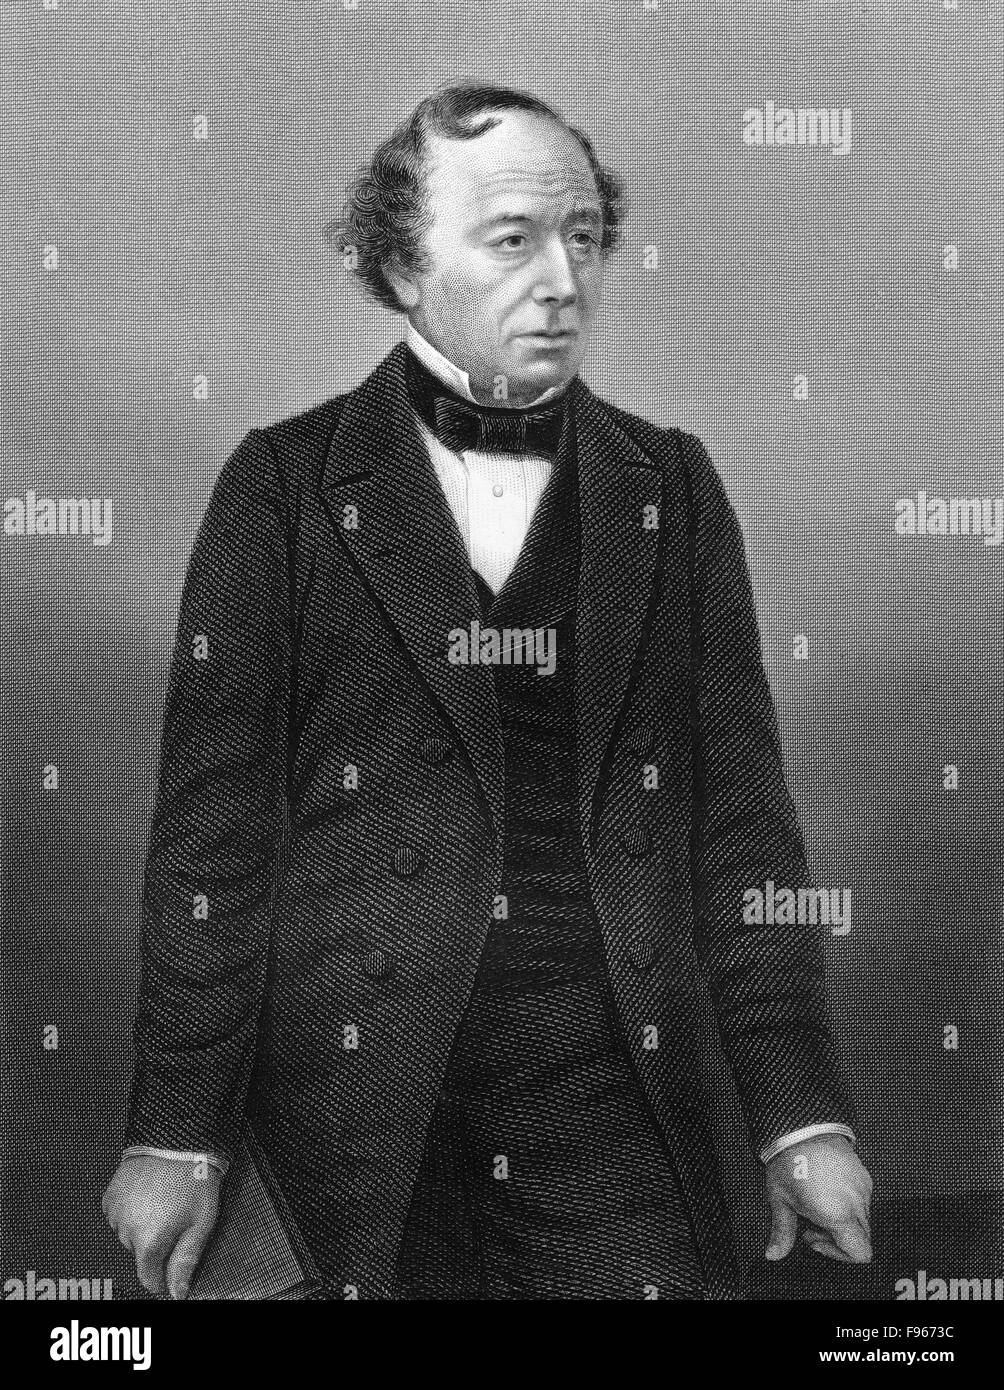 Benjamin Disraeli, 1° Conte di Beaconsfield, 1804 - 1881, un statista britannico e romanziere, Foto Stock